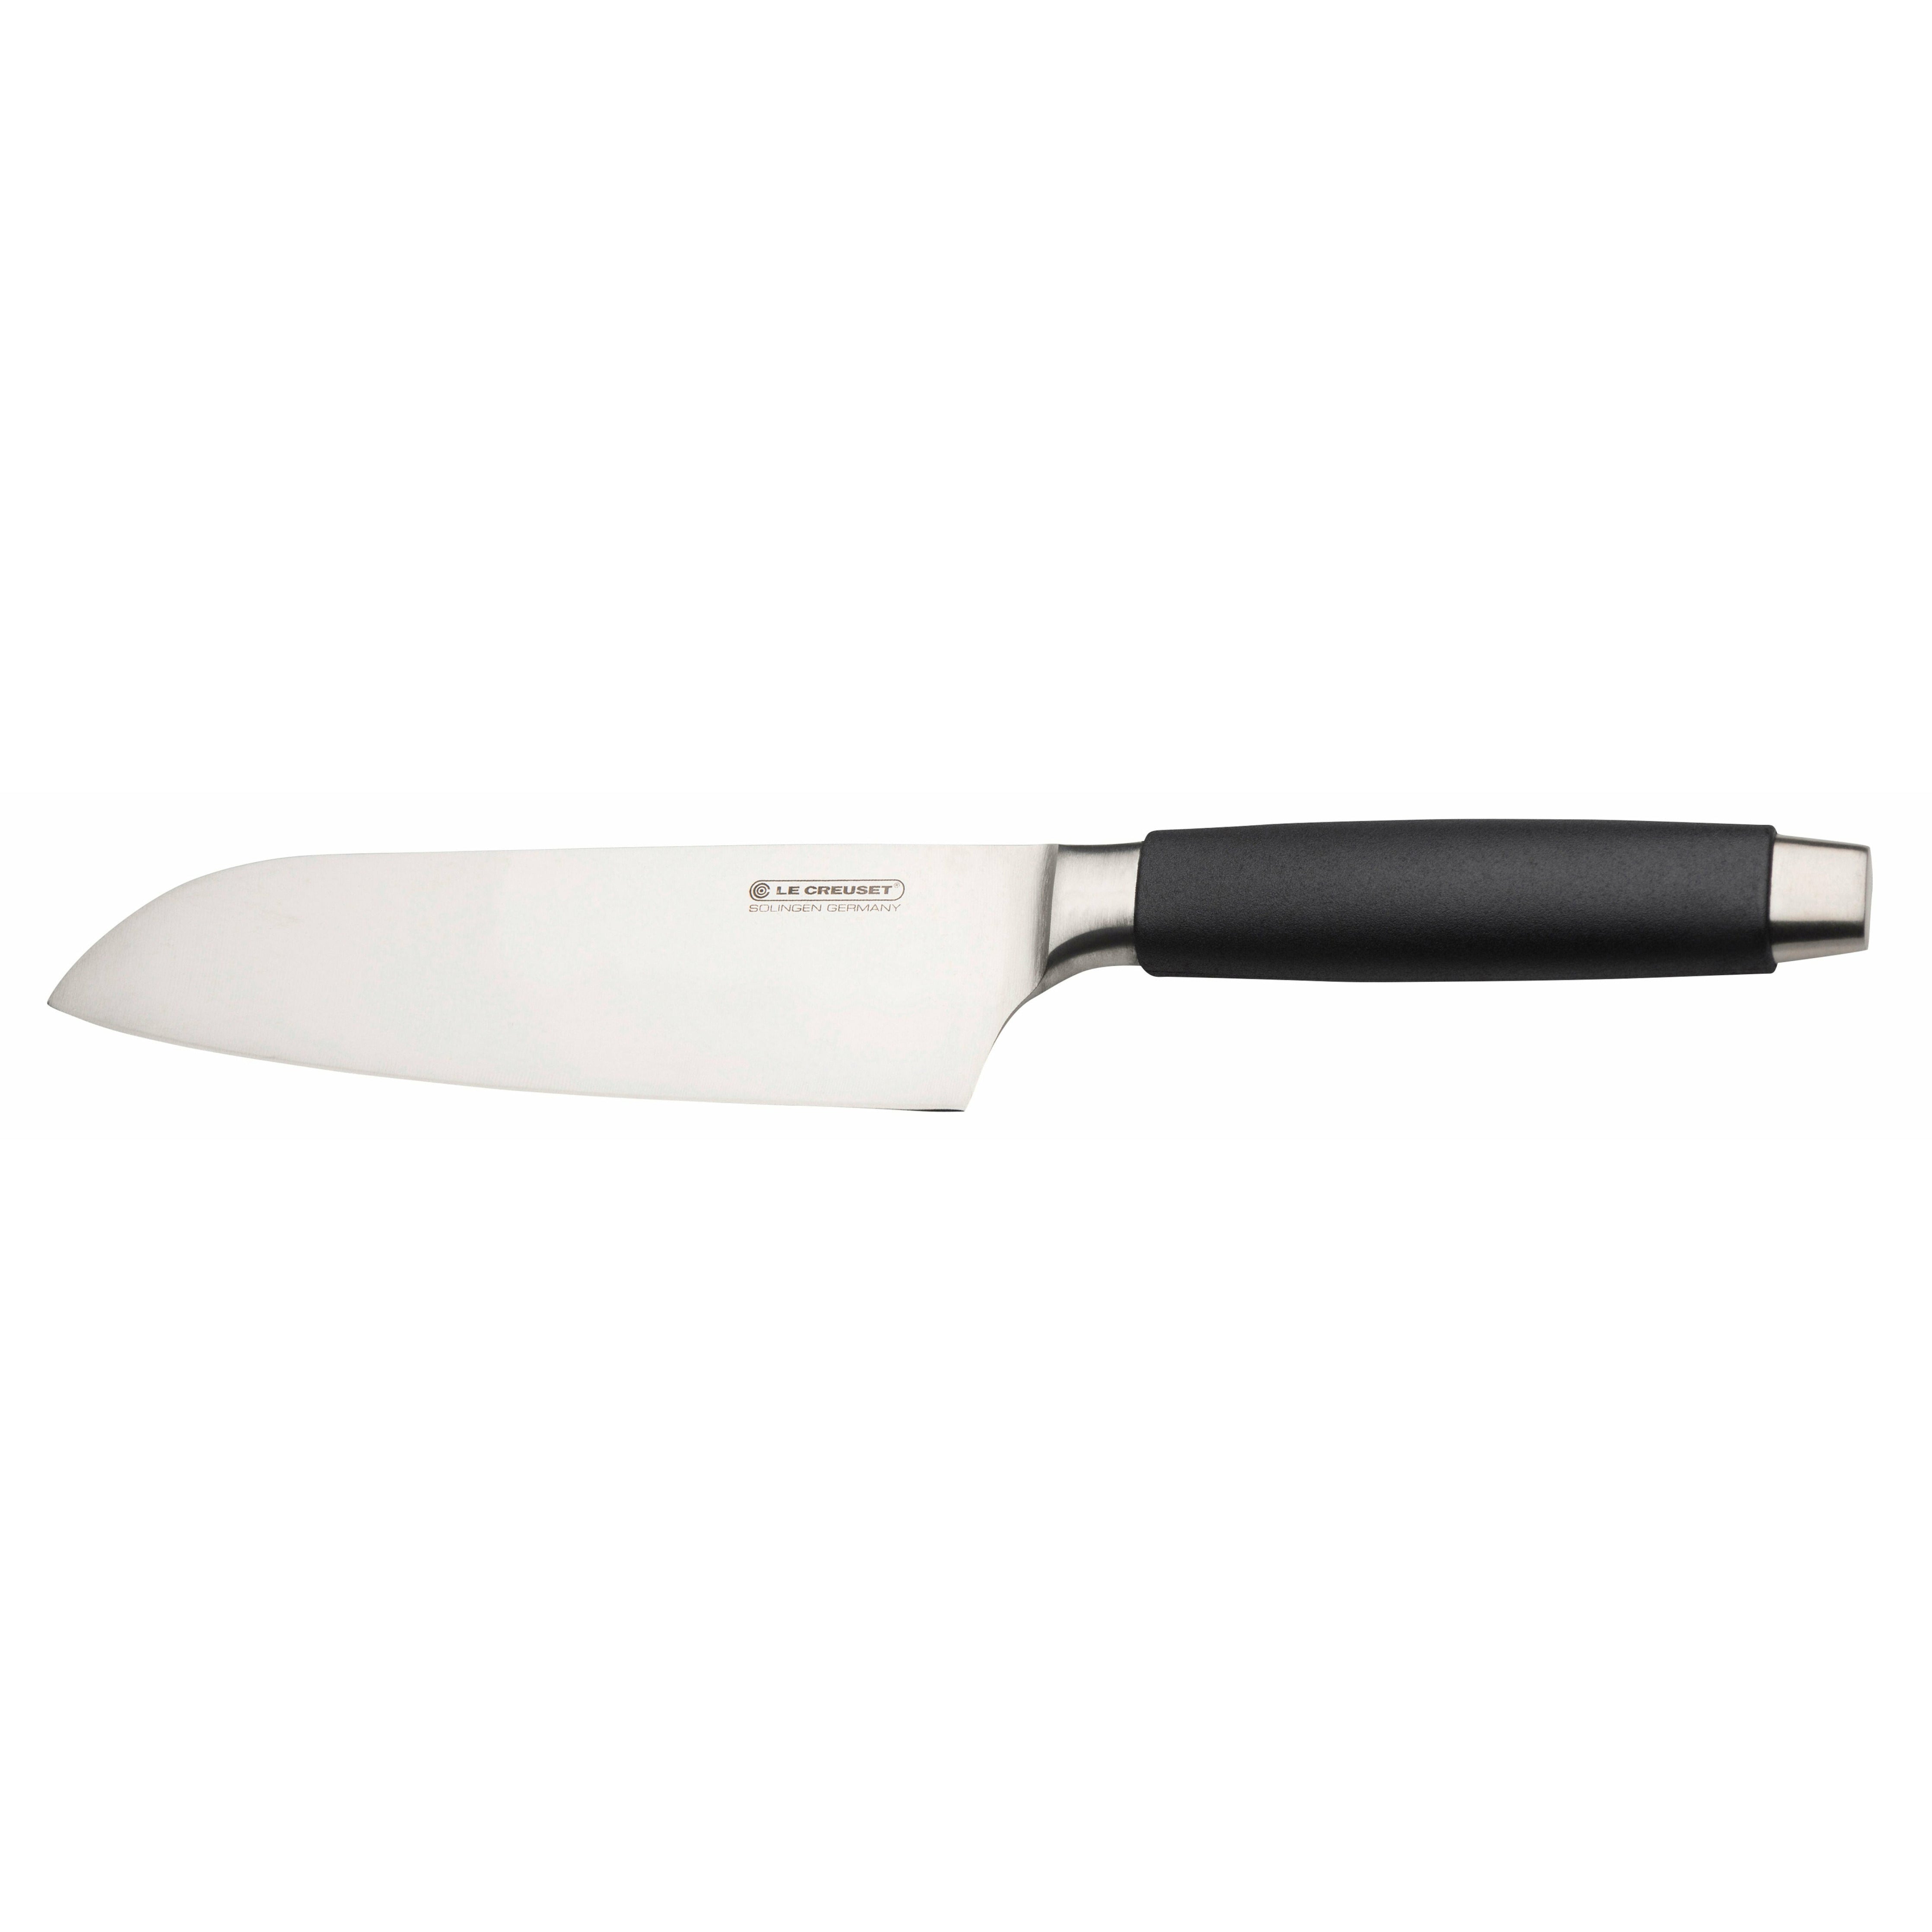 Le Creuset Santoku Knife Standard með svörtu handfangi, 18 cm